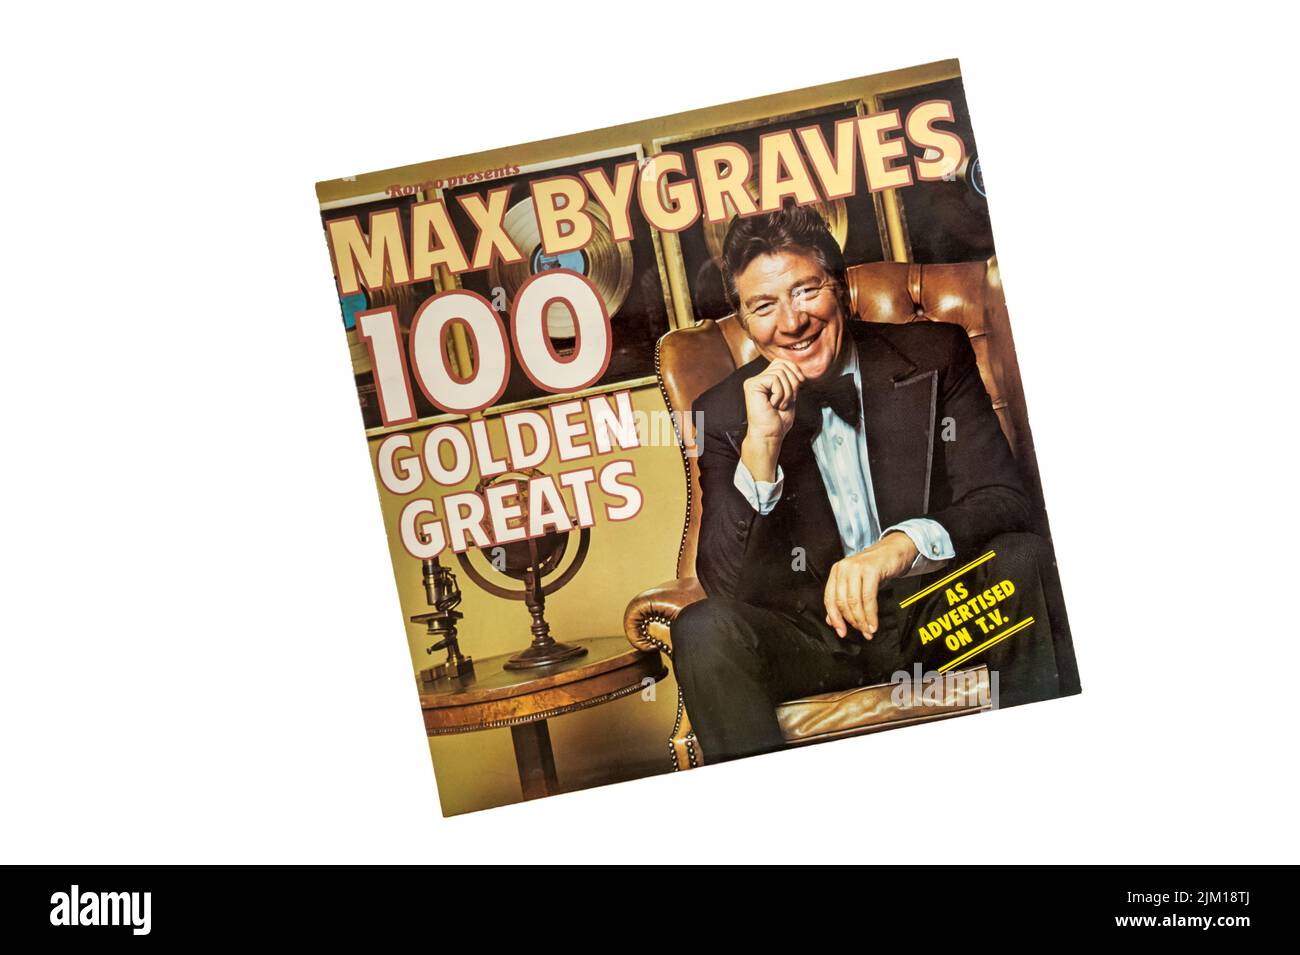 Max Bygraves 100 Golden Greats rilasciato da Ronco nel 1976. Foto Stock